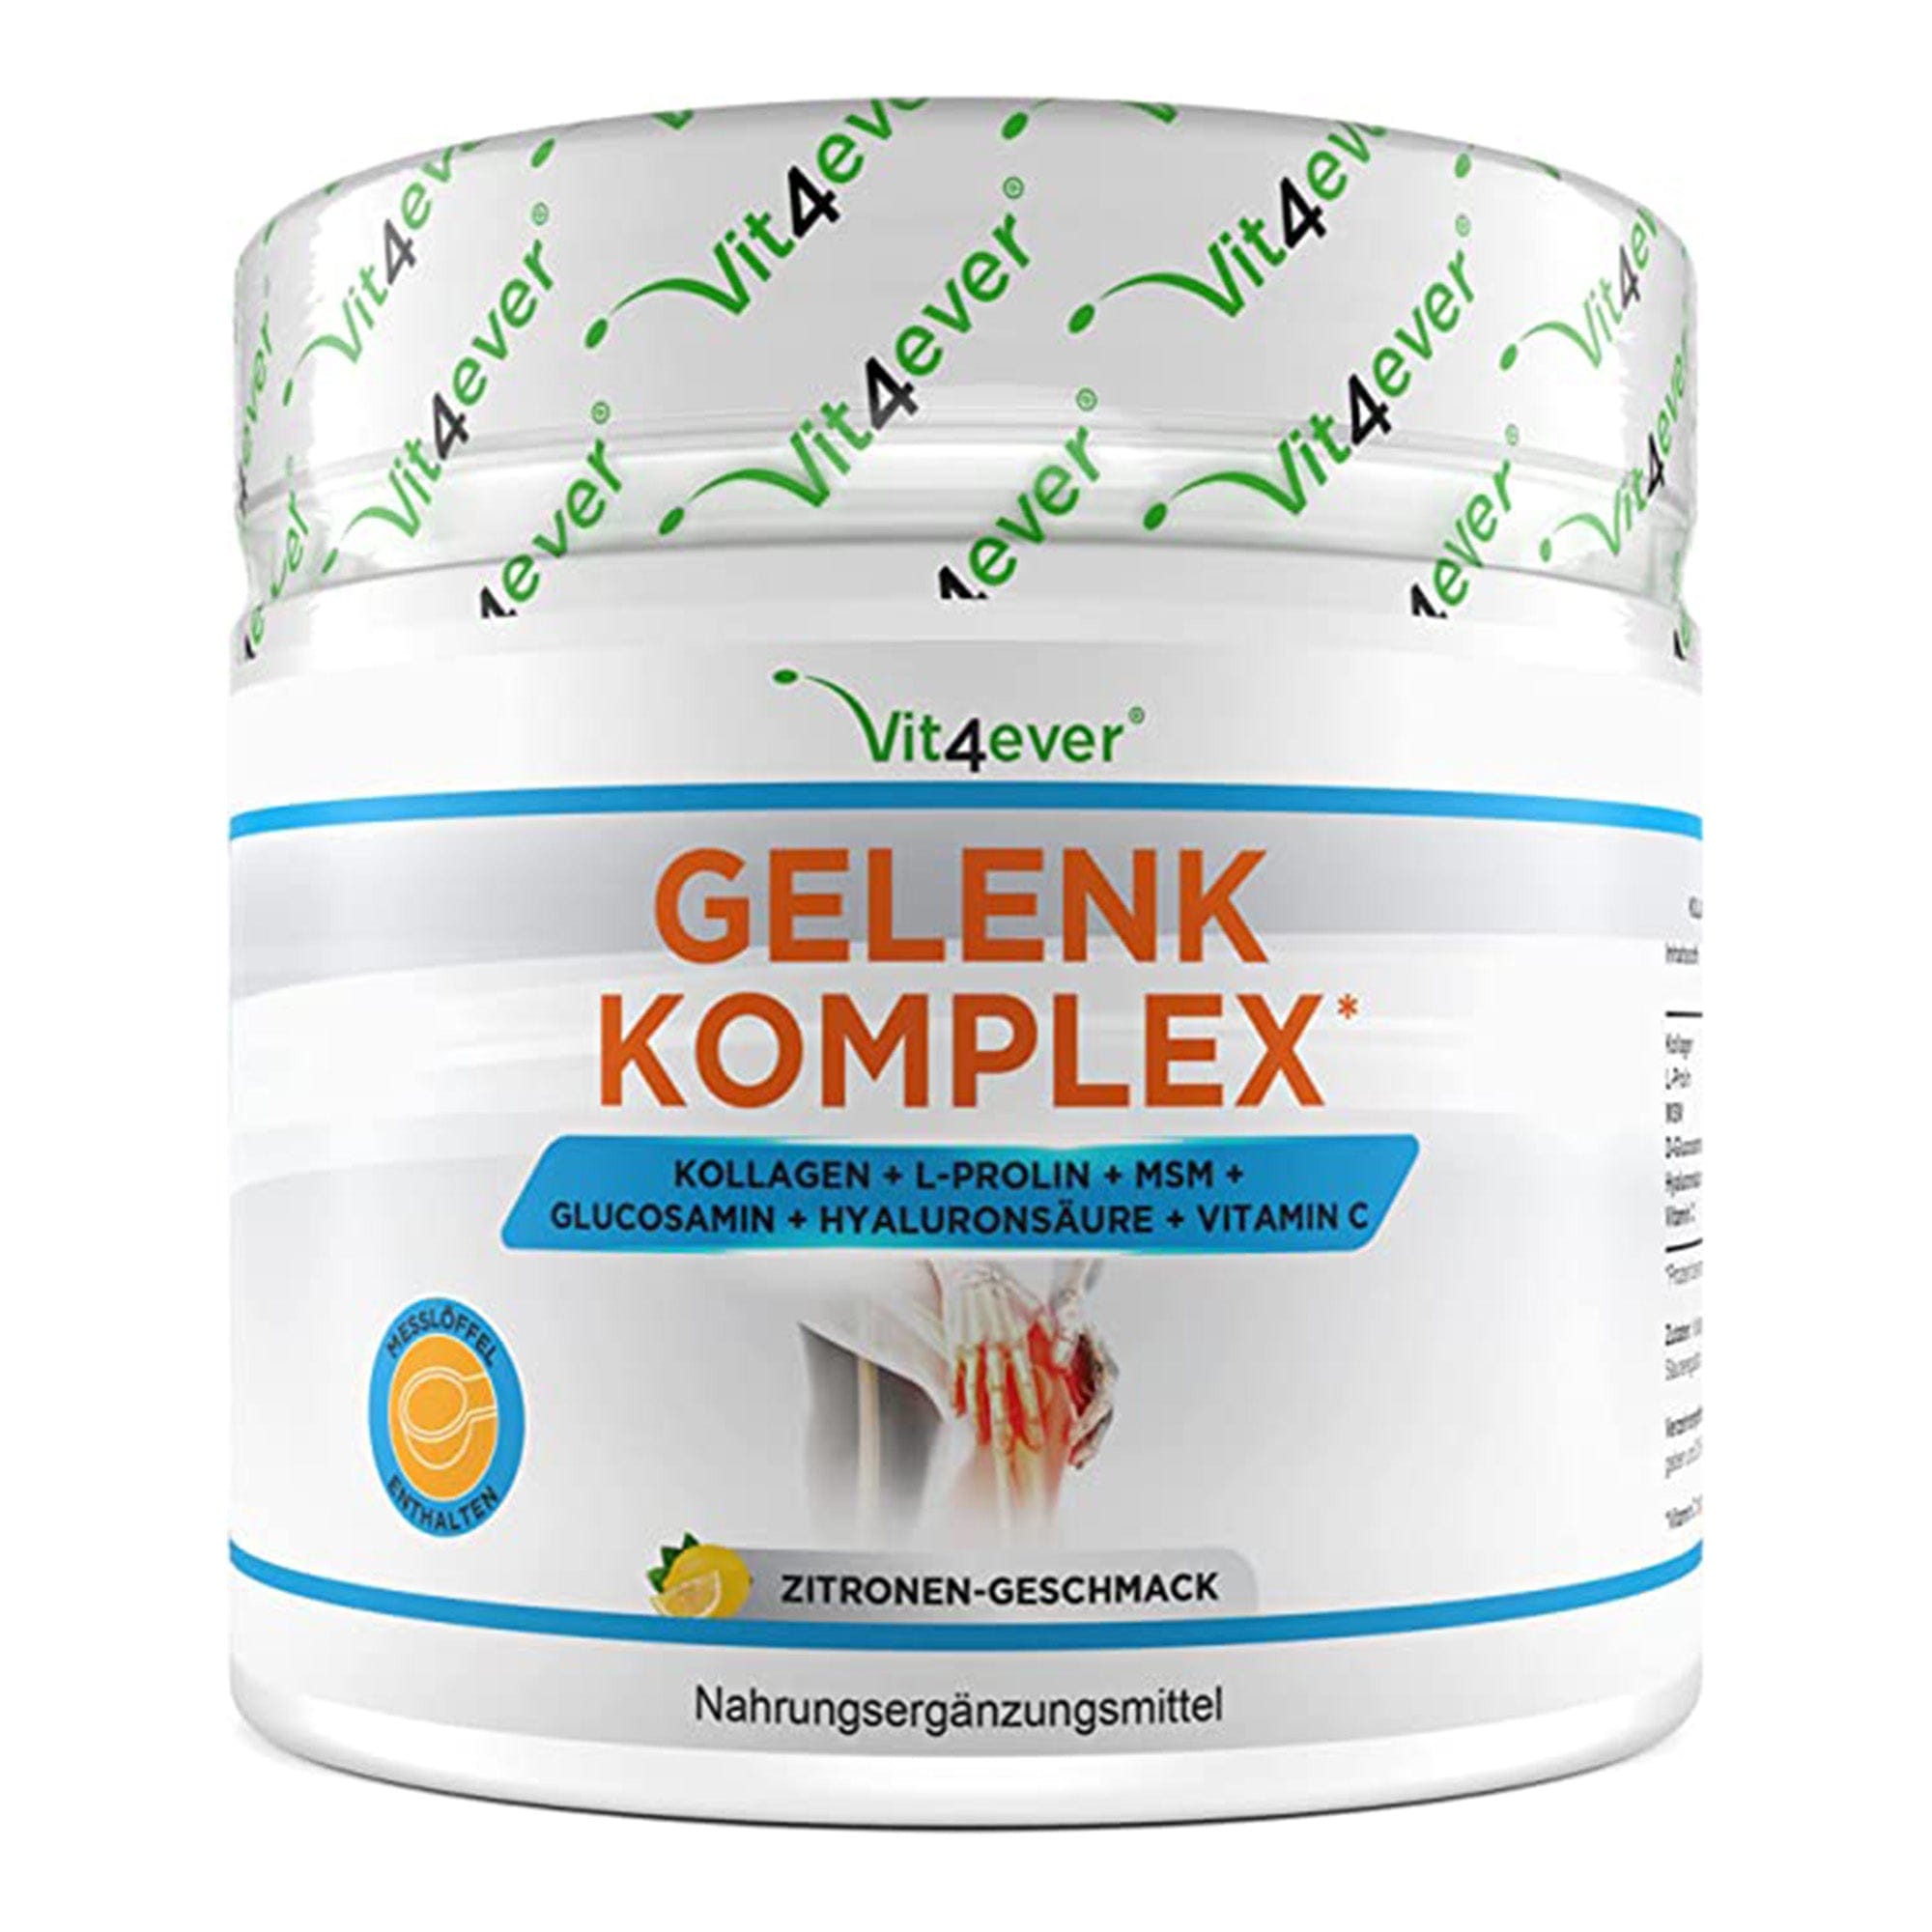 Joint Complex | Met collageenhydrolysaatpeptiden, L-proline, MSM, hyaluronzuur, glucosamine en vitamine C | Gewrichten | 500g | Vit4ever